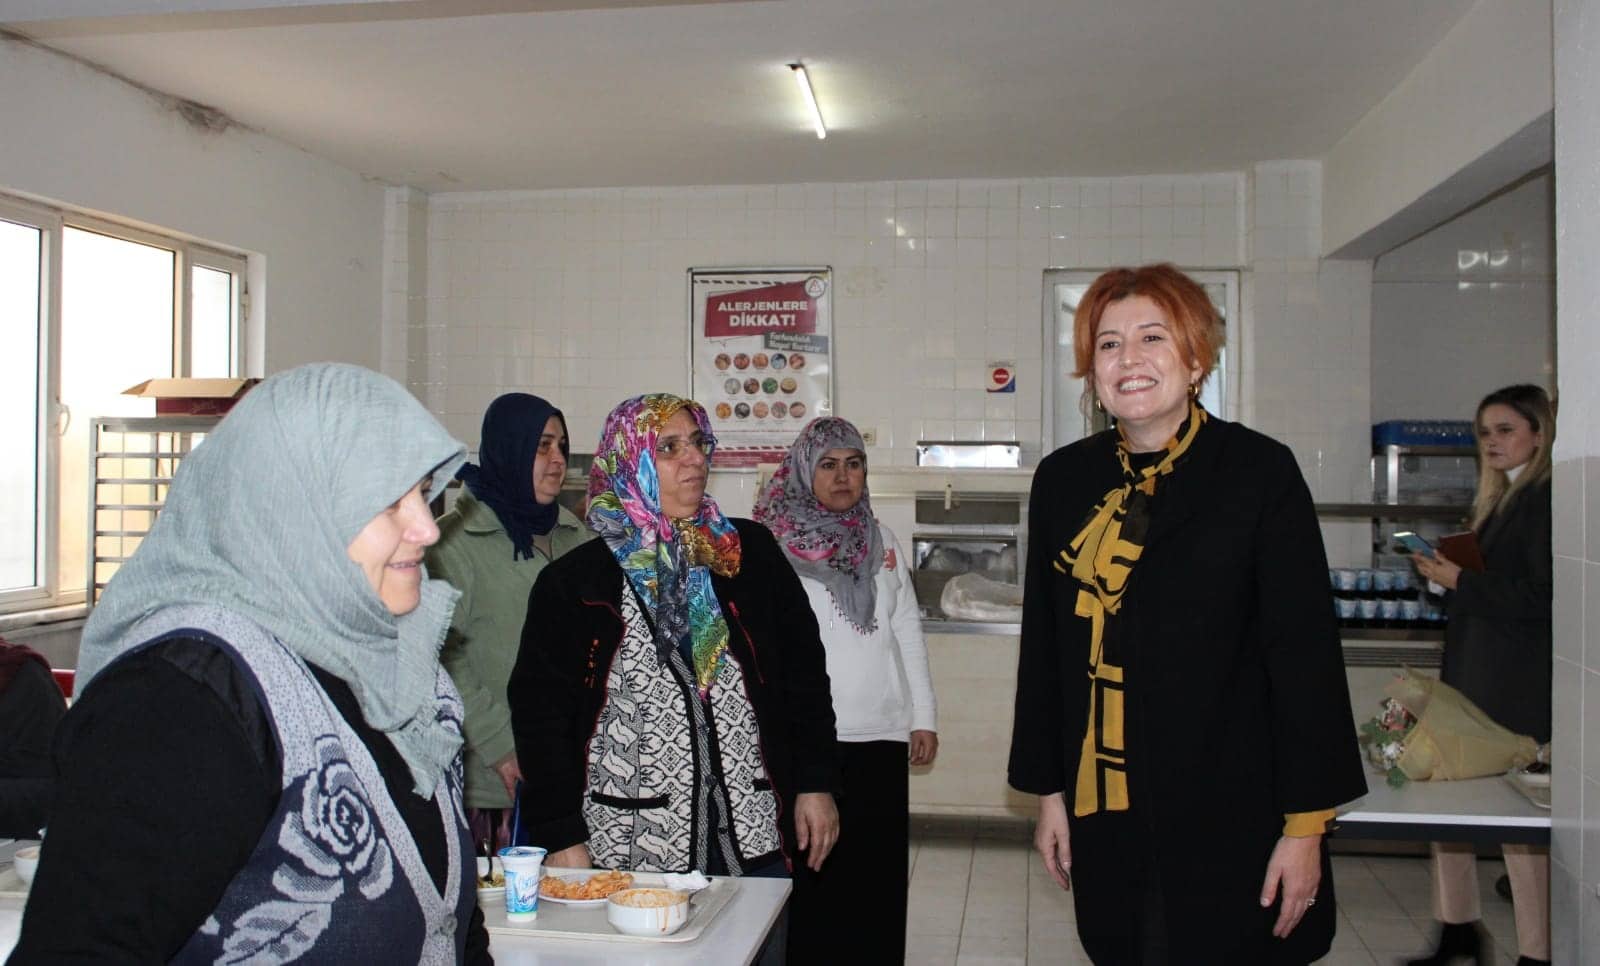 Bandırma'nın tek kadın belediye başkan aday adayı olan AK Parti Kadın Kolları Başkanı Oya Yücel, Kocaman Balıkçılık'ta 200 kadın çalışanla bir araya geldi. Yücel, Bandırma'nın 37. belediye başkanı olma hedefiyle yola çıktığını ifade etti.